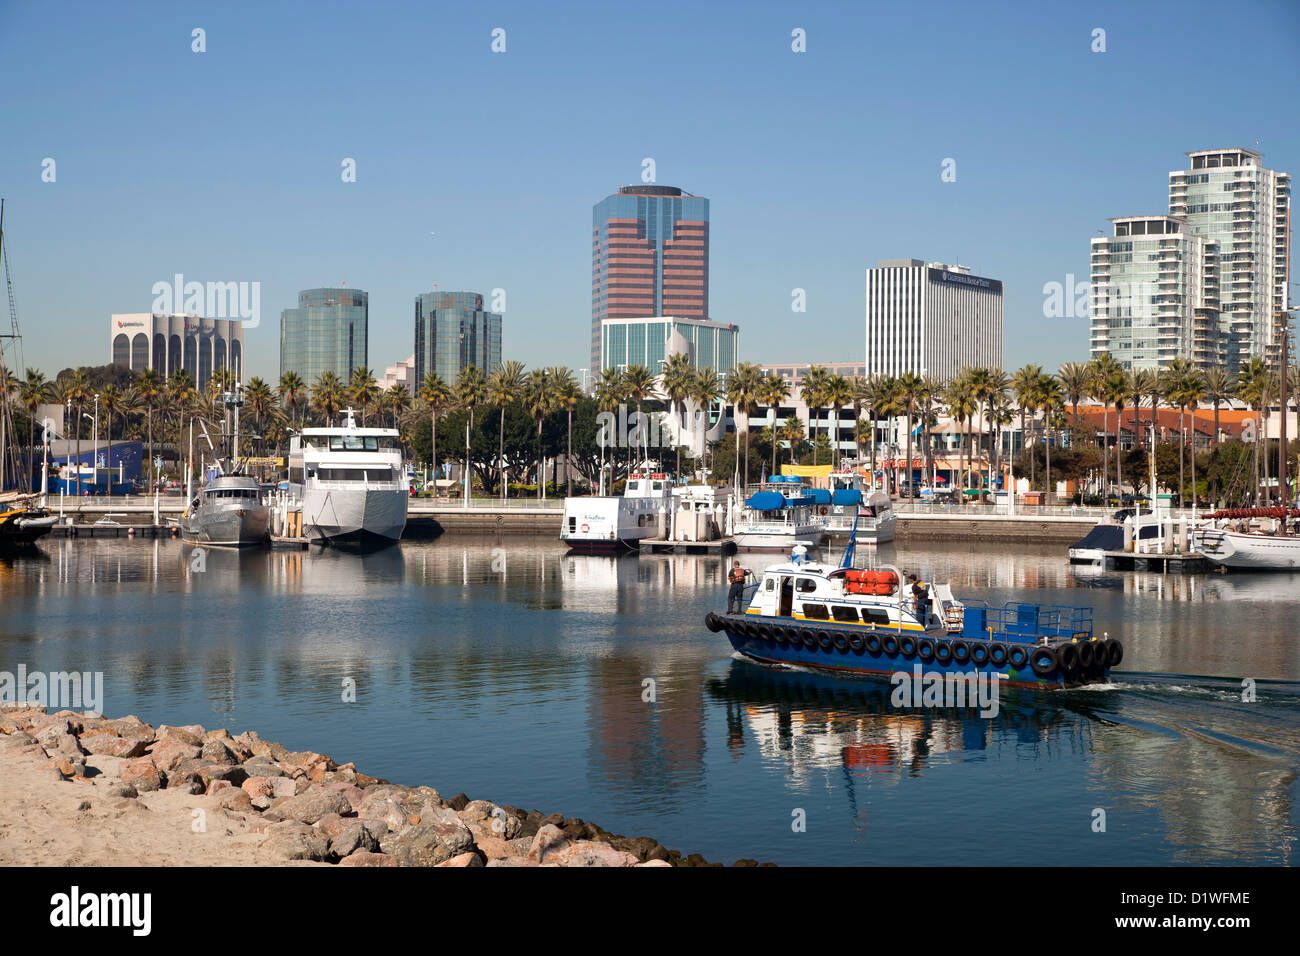 Hafen und Shoreline Aquatic Park in Long Beach, Los Angeles County, California, Vereinigte Staaten von Amerika, Vereinigte Staaten Stockfoto